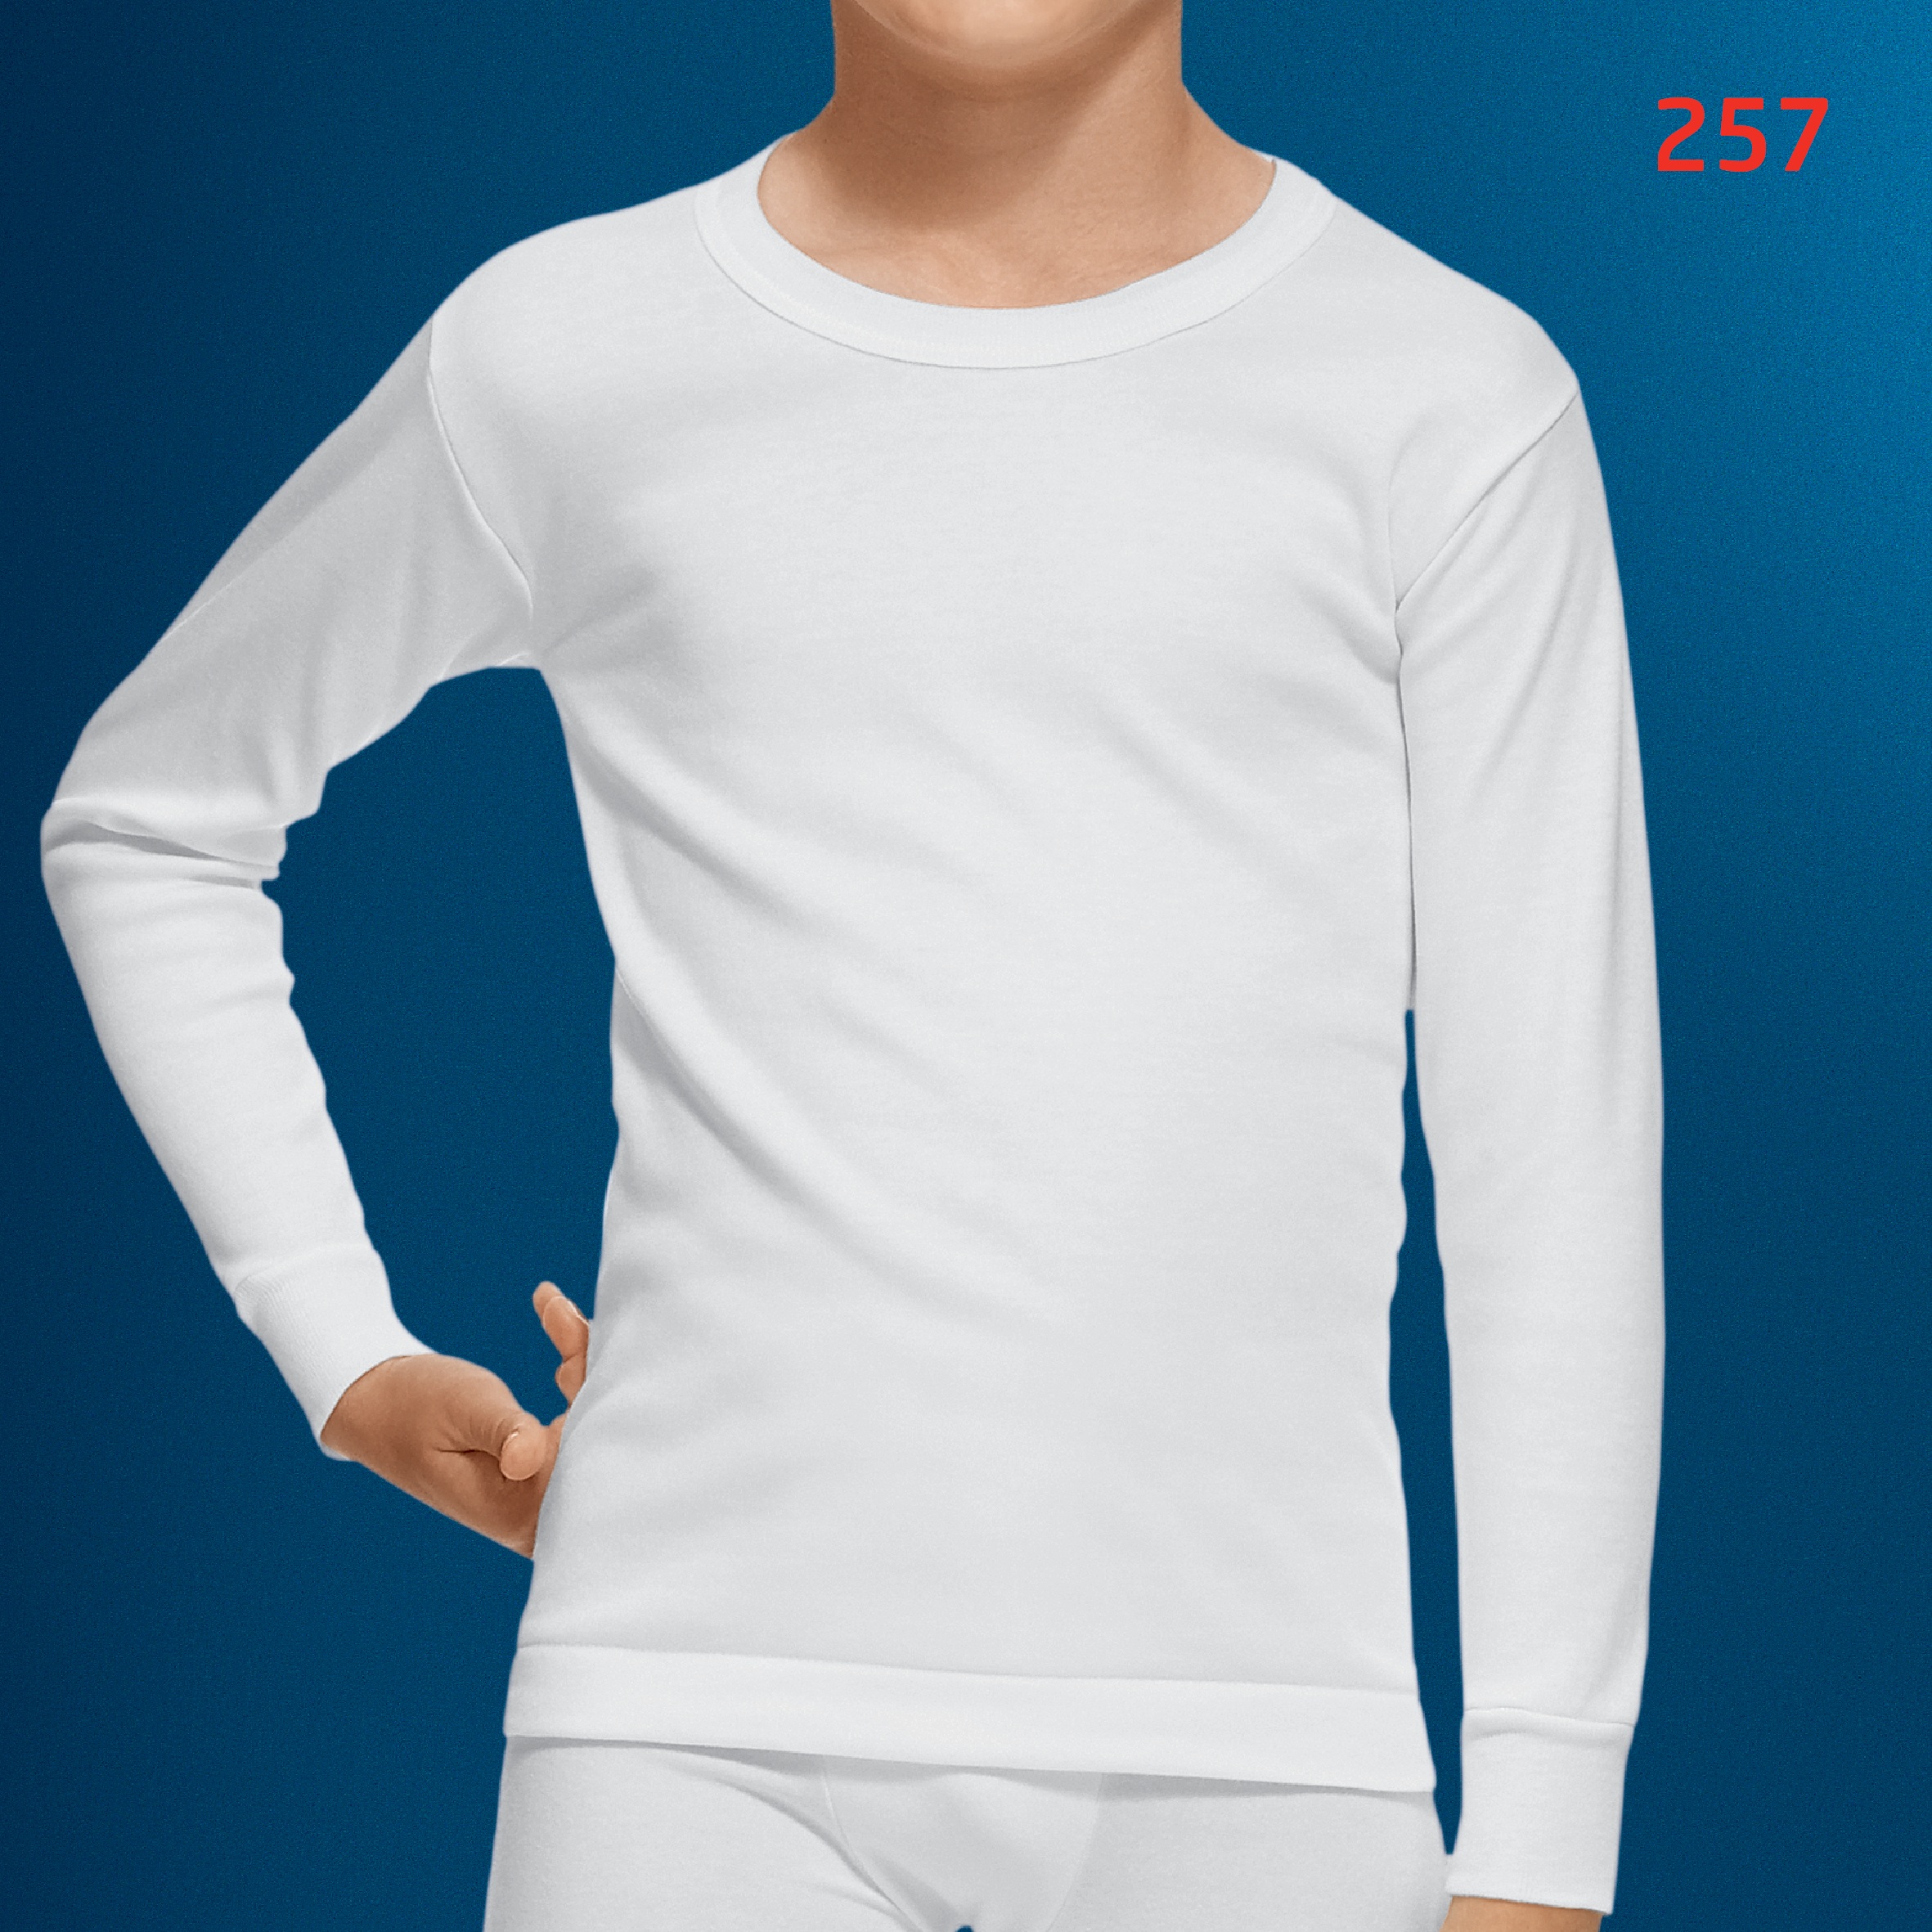 Camiseta interior hombre de manga larga de algodón, blanco ABANDERADO,  talla M